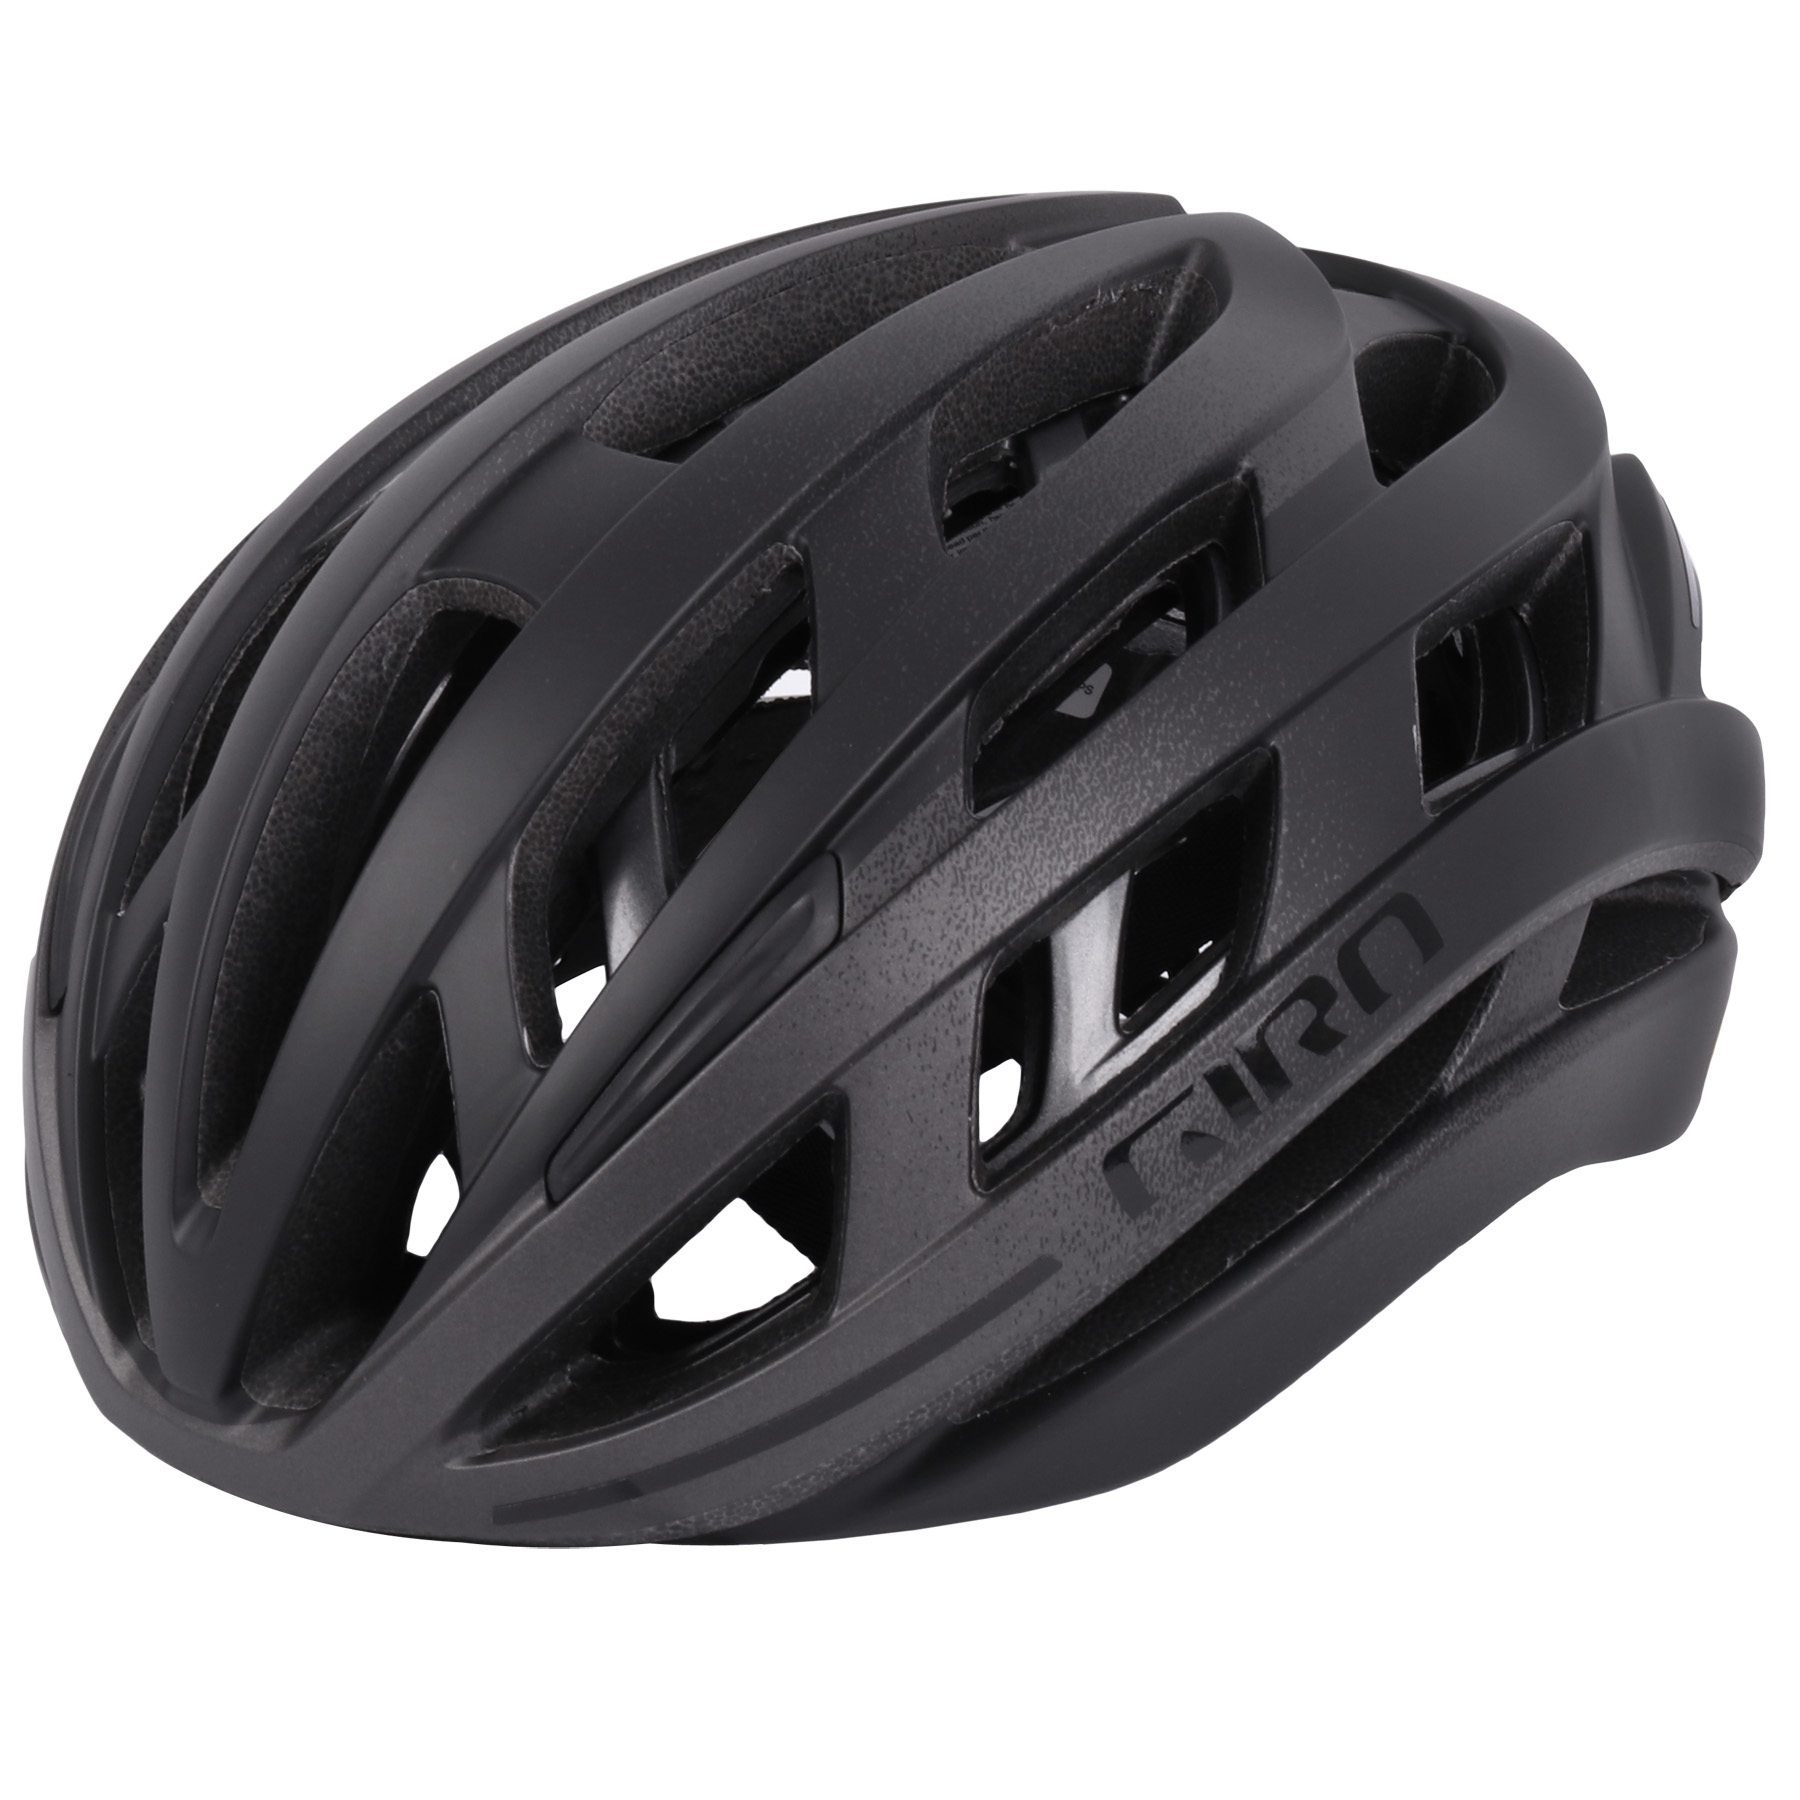 Produktbild von Giro Helios Spherical MIPS Helm - matte black fade